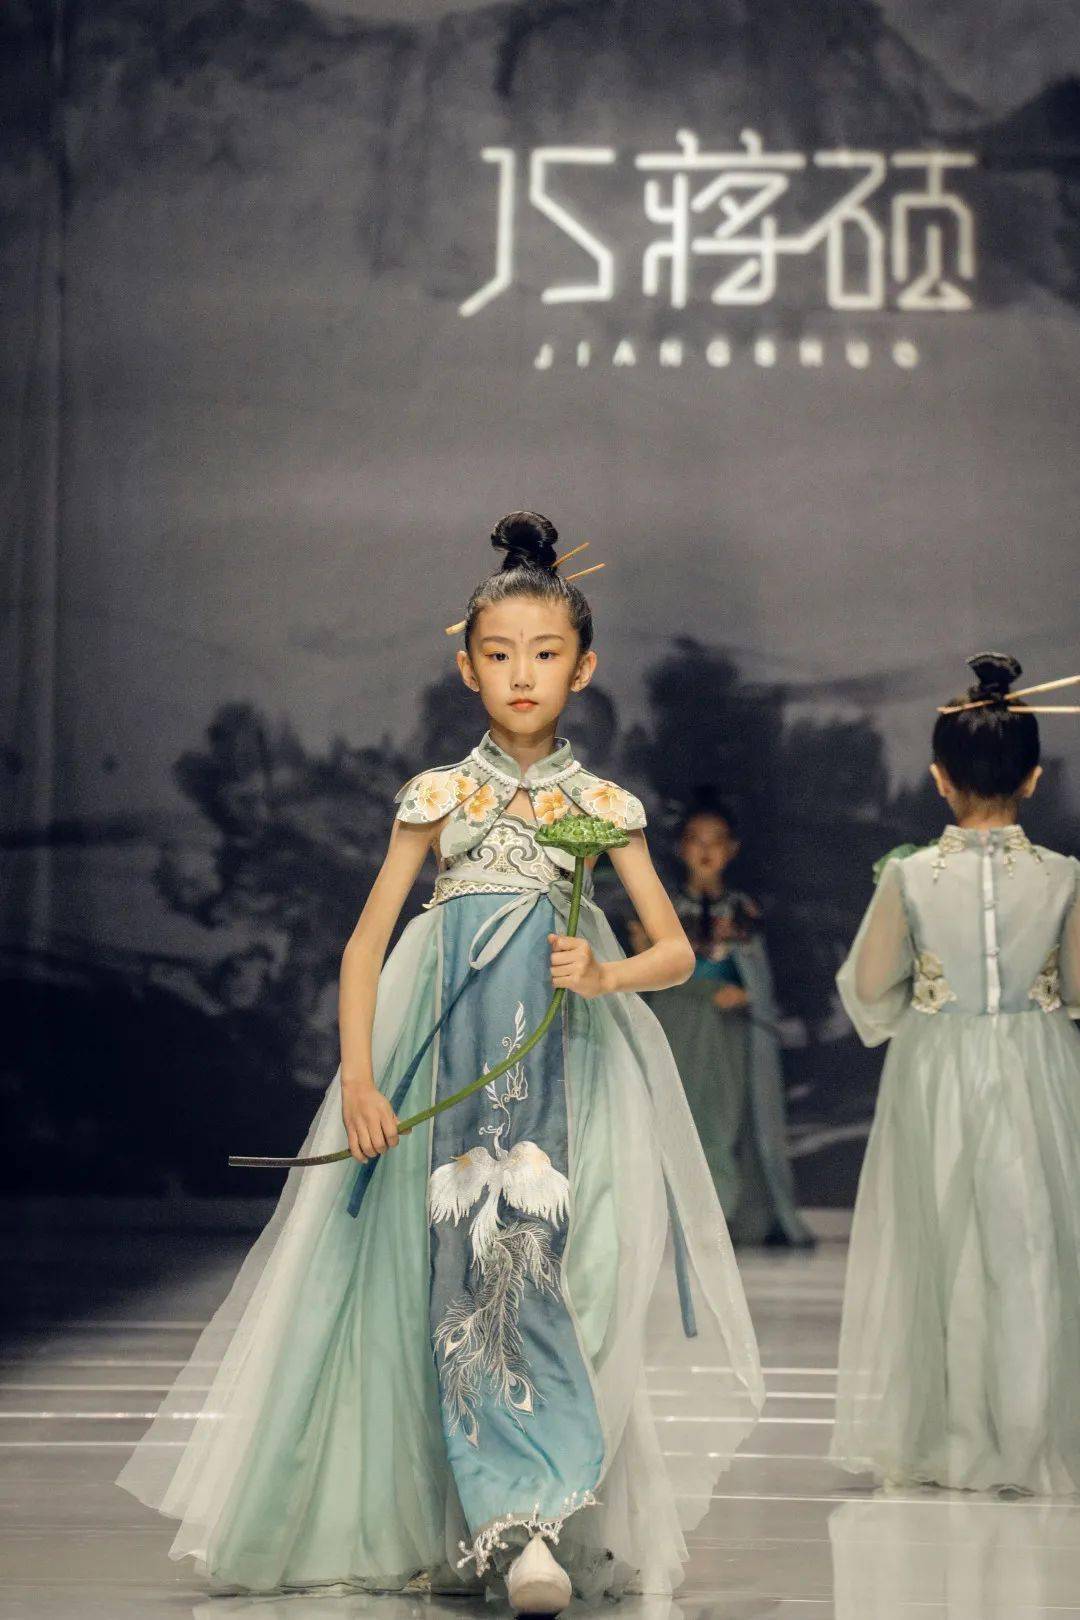 这是蒋硕连续五年用时装设计作品,在中国国际时装周向少年儿童普及